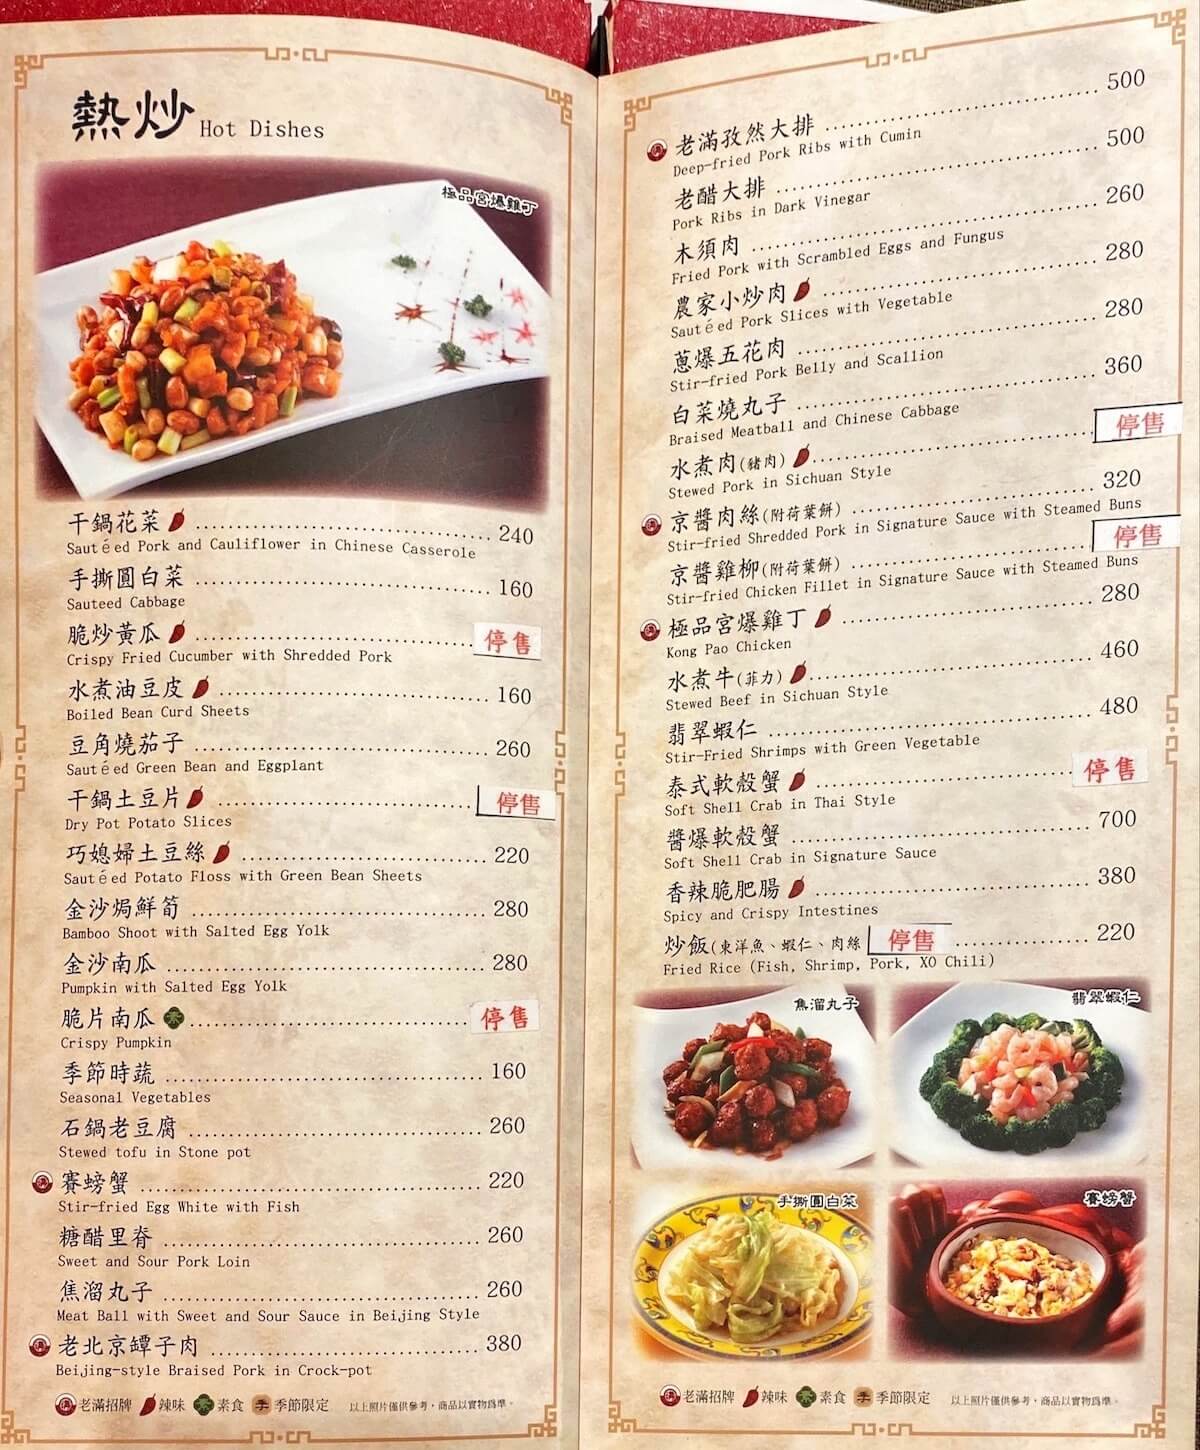 Hot dishes main menu